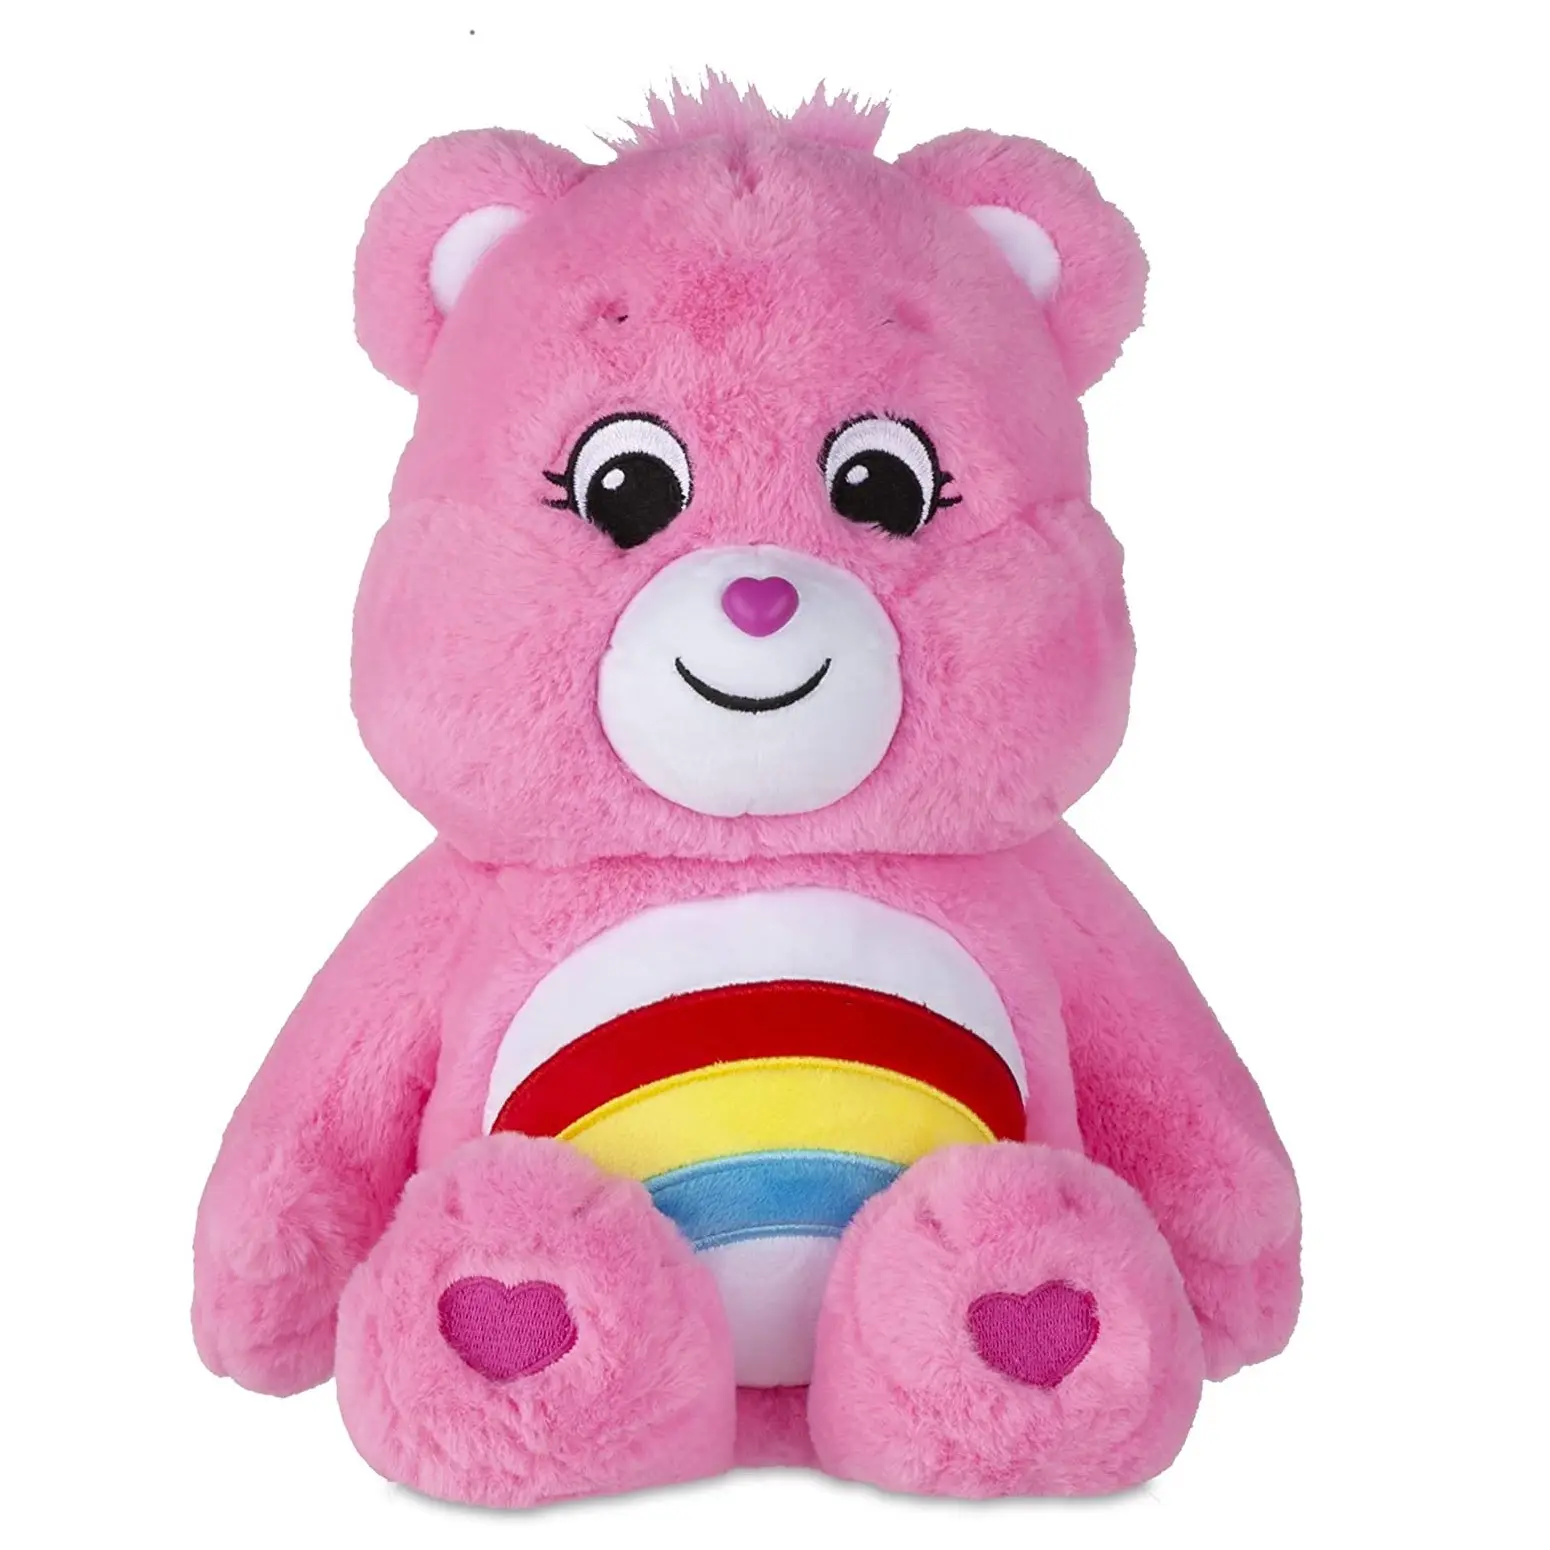 Perawatan Kualitas Tinggi Teddy Bear Cheer Bear Bean Plush 9 Inci Mainan Beruang Pertunjukan Suasana Hati Cantik